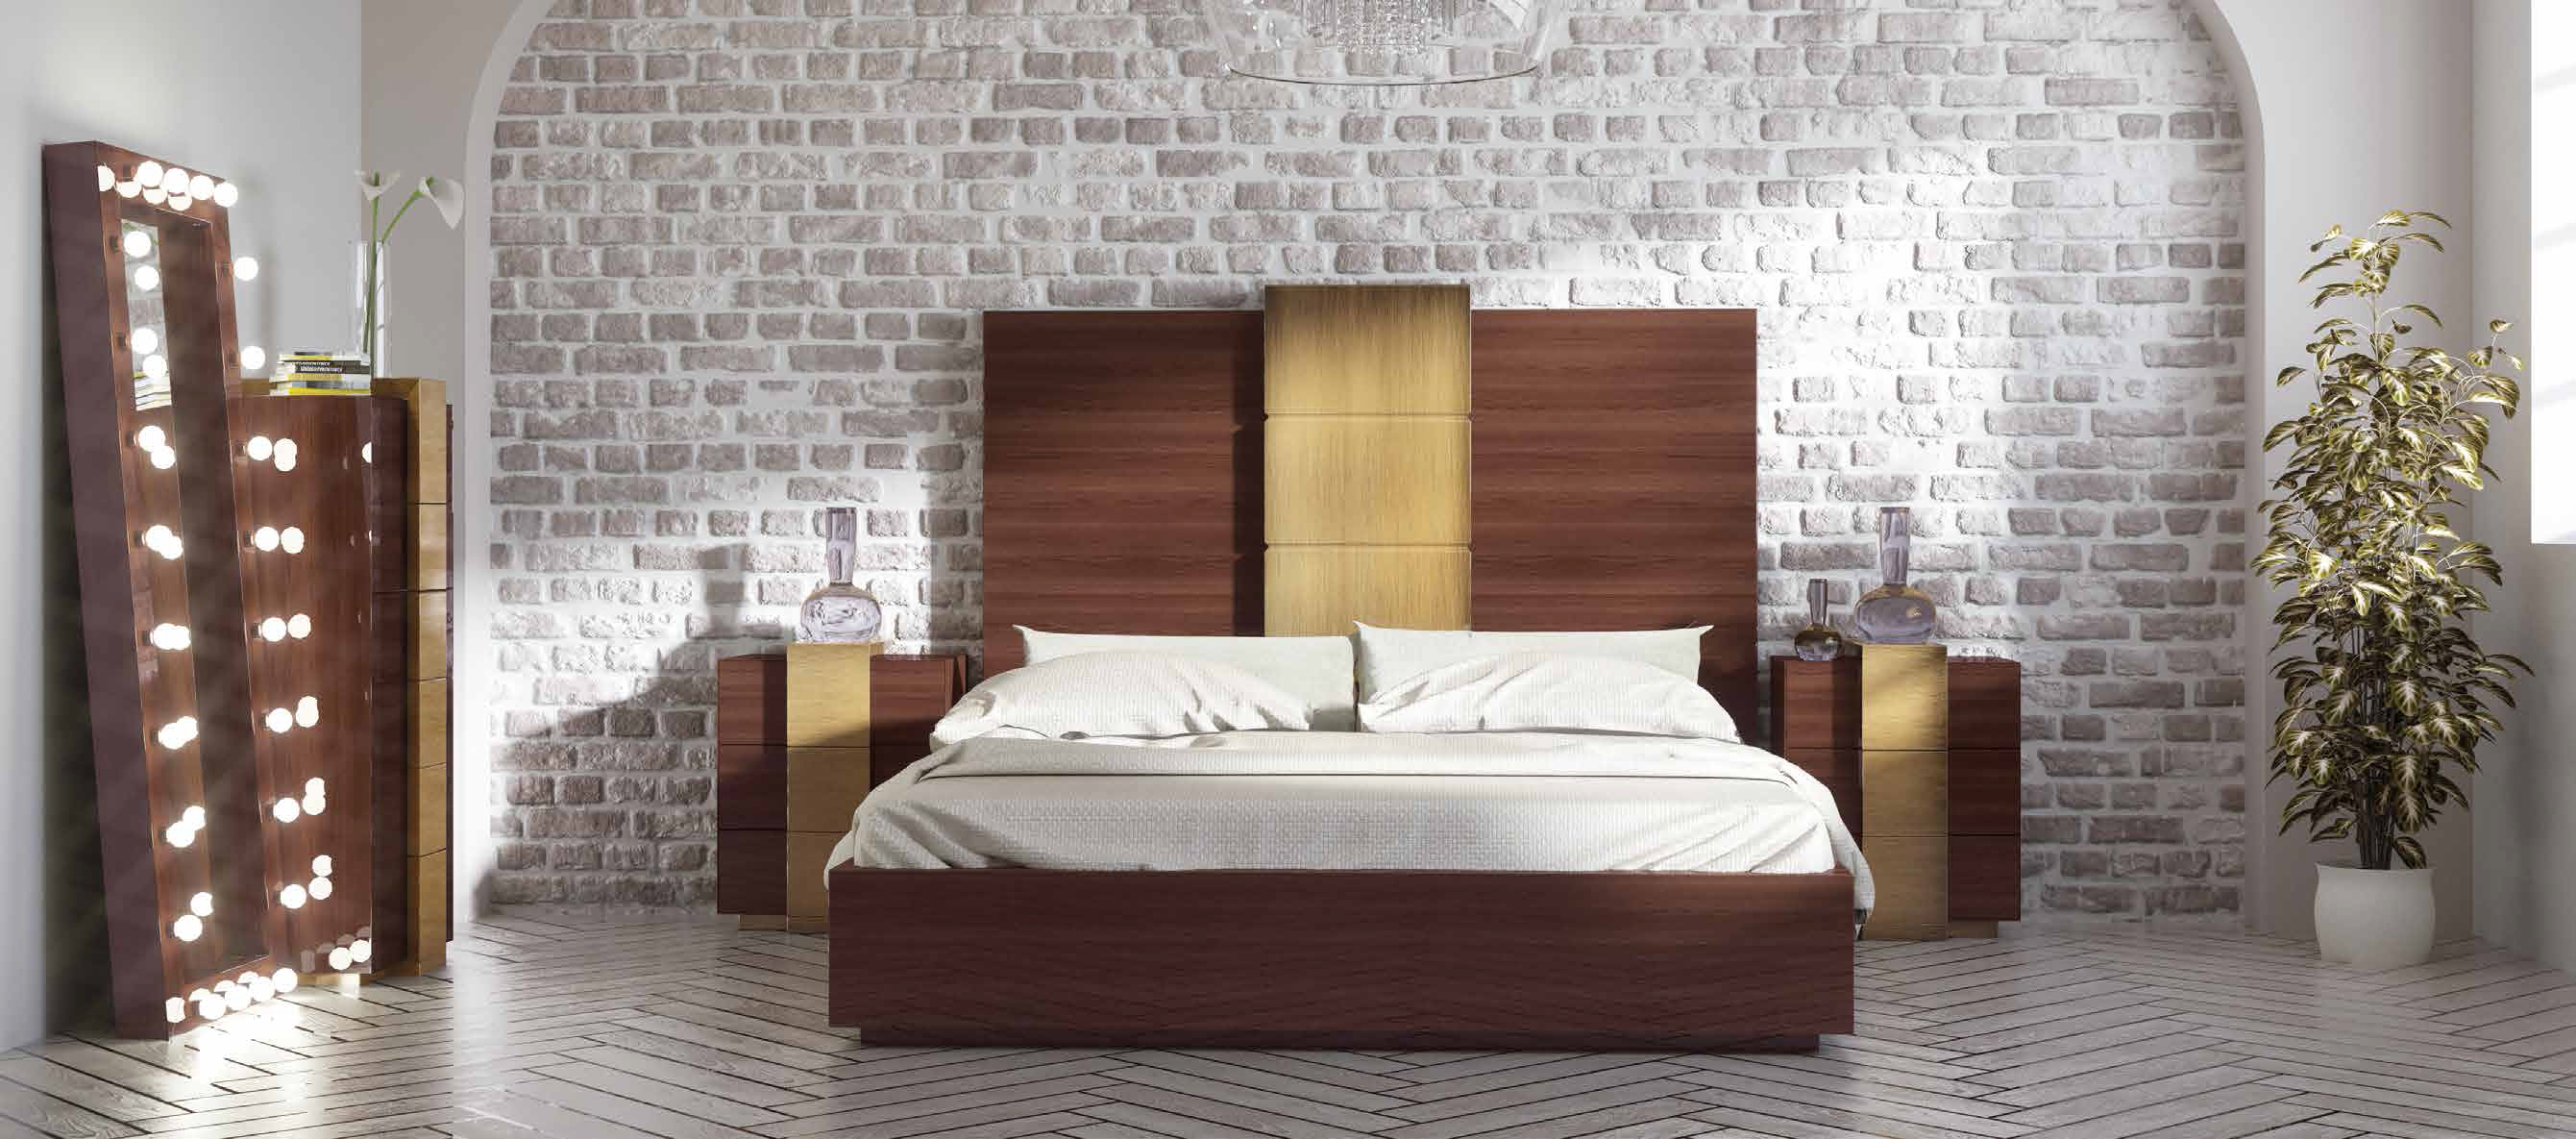 Brands Franco Furniture Avanty Bedrooms, Spain DOR 13